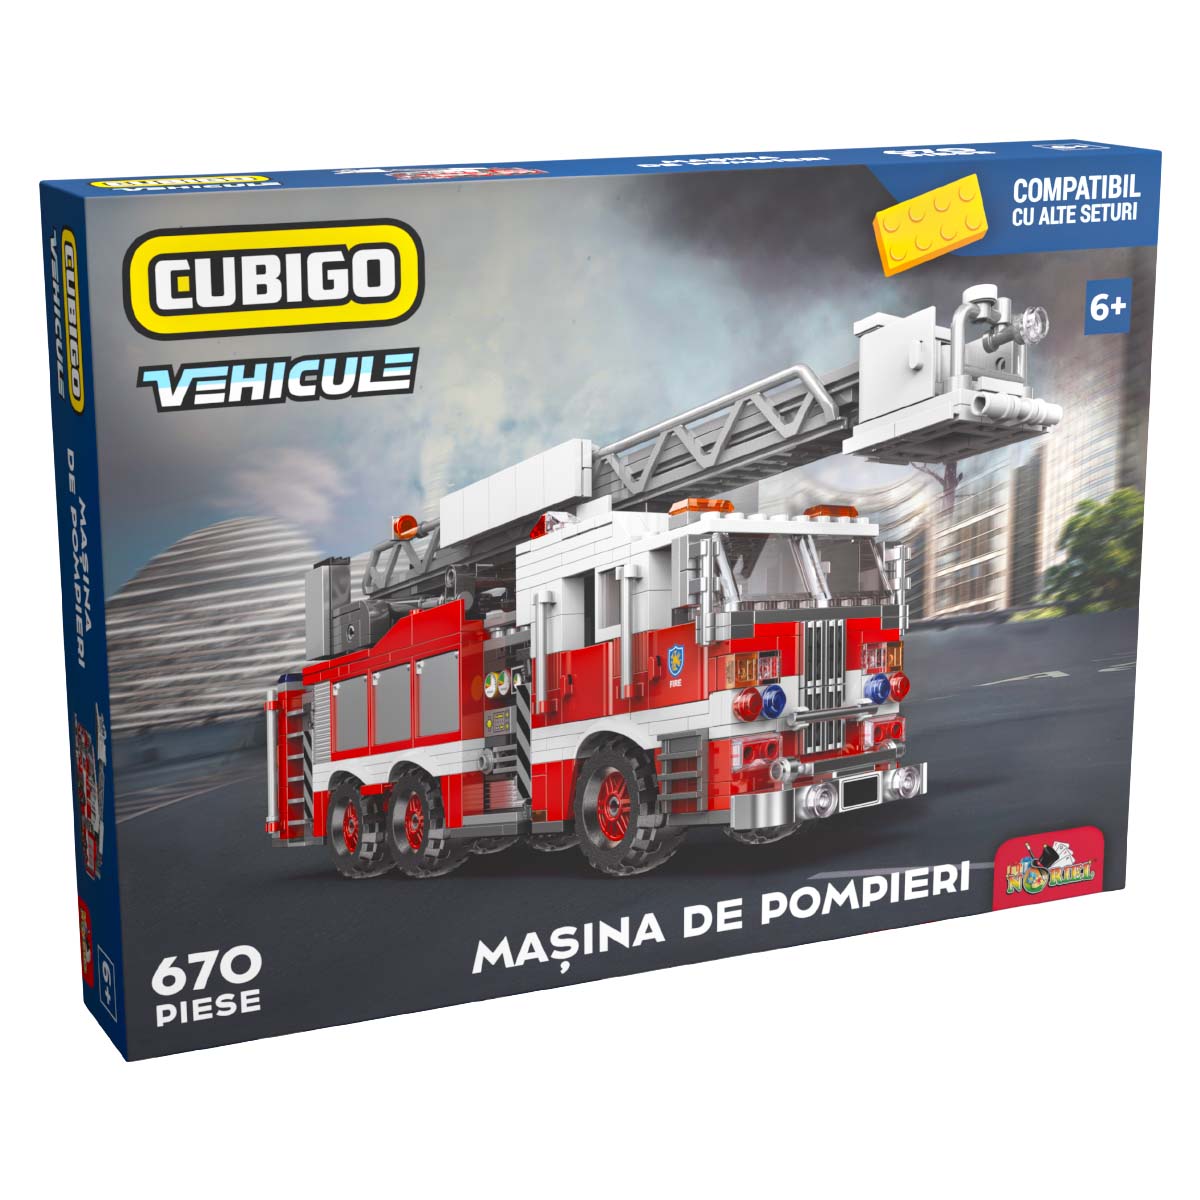 Masina de pompieri, Cubigo construcție imagine 2022 protejamcopilaria.ro